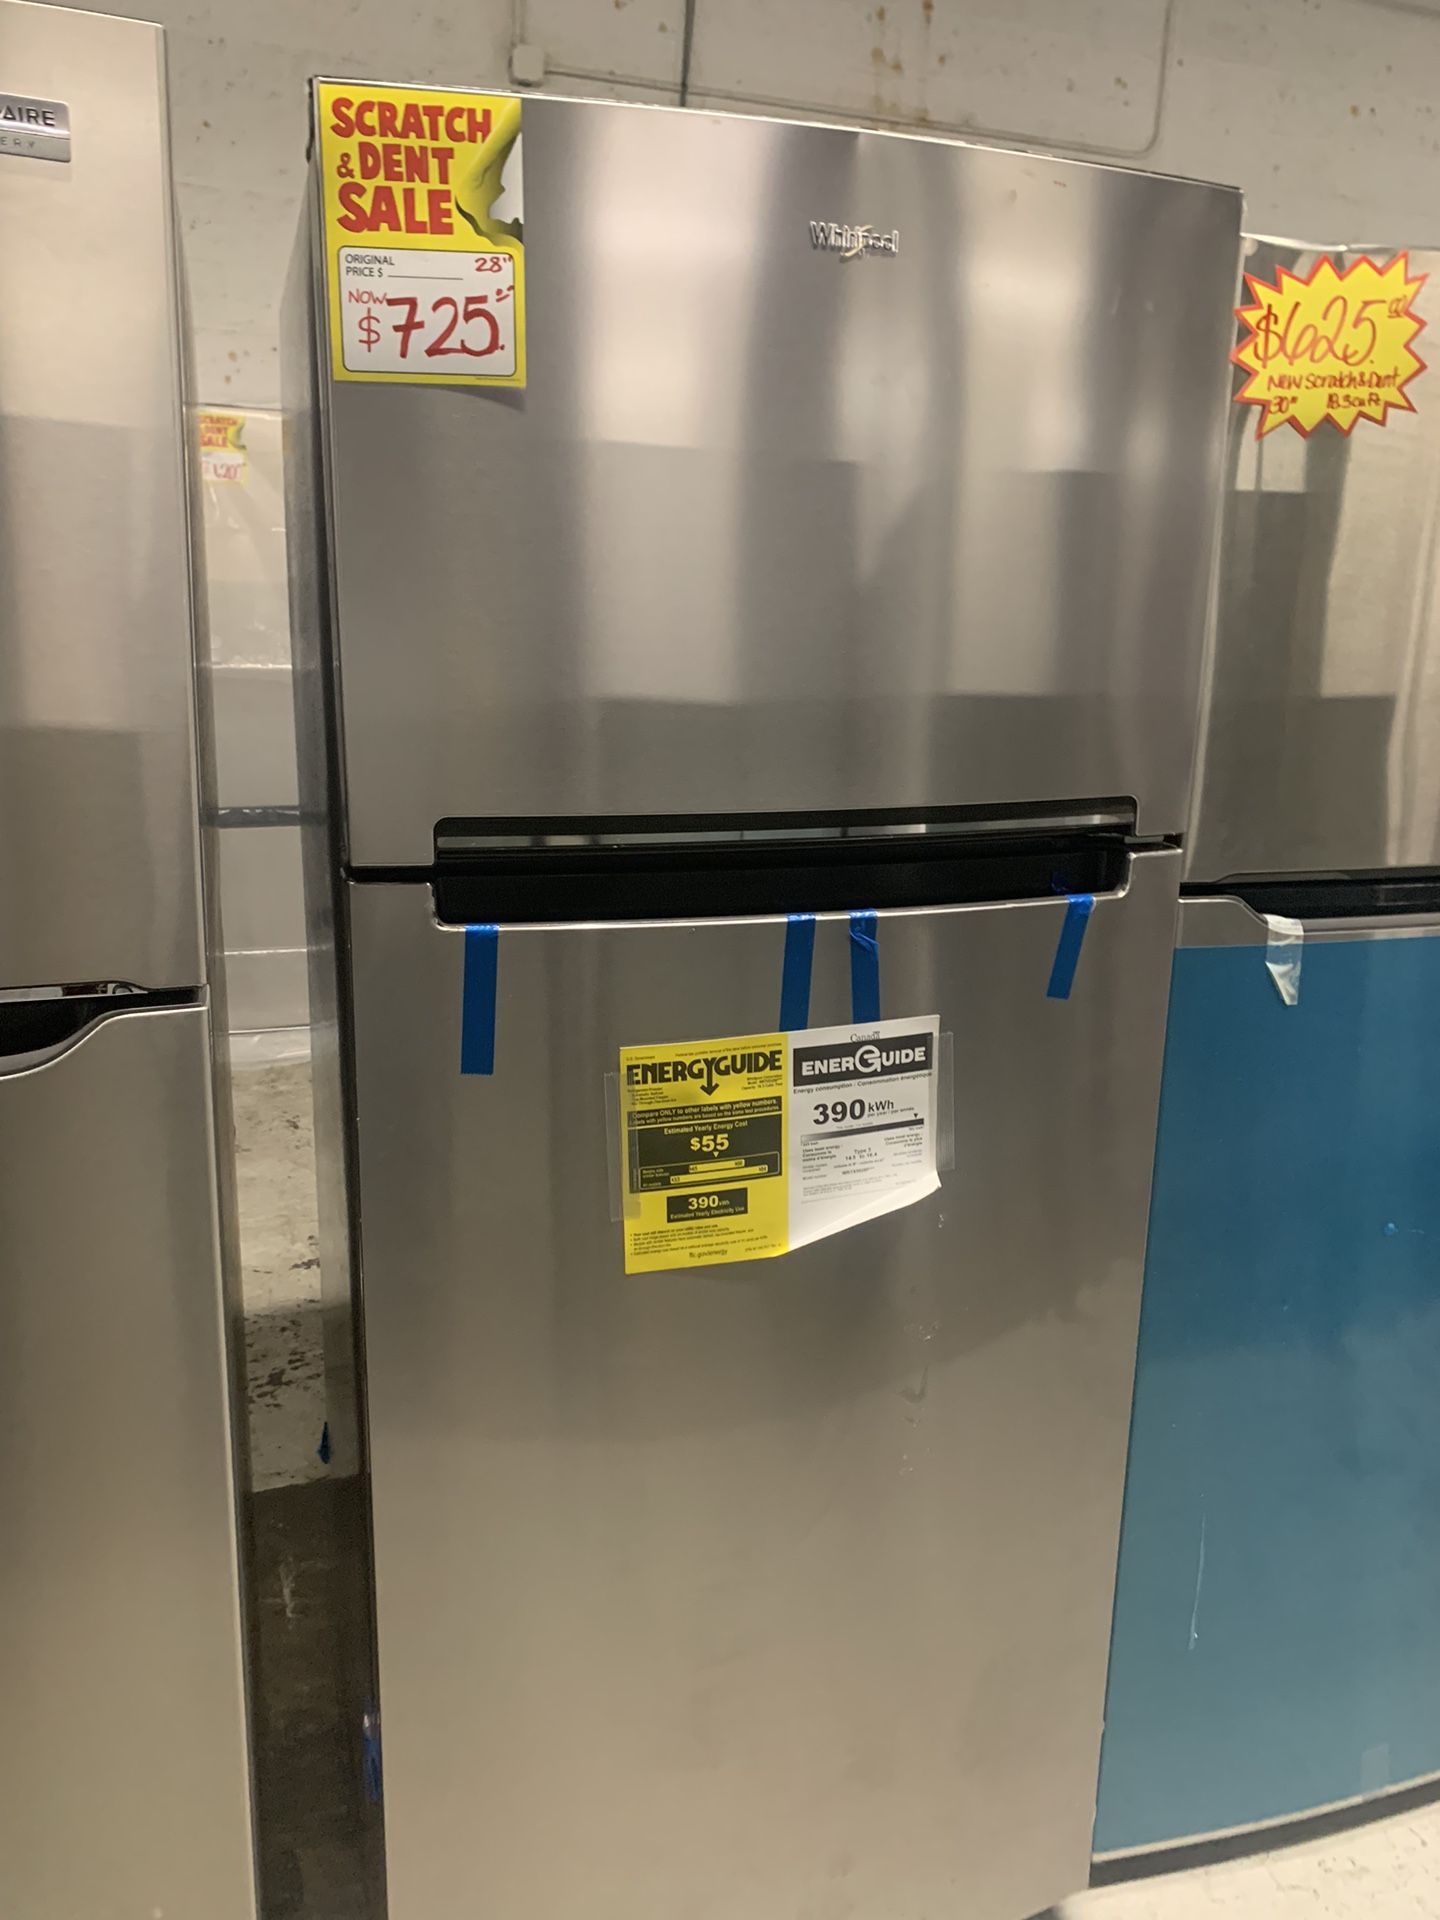 New Scratch&Dent Top Freezer Fridge 28” W/ 1 Year Warranty 